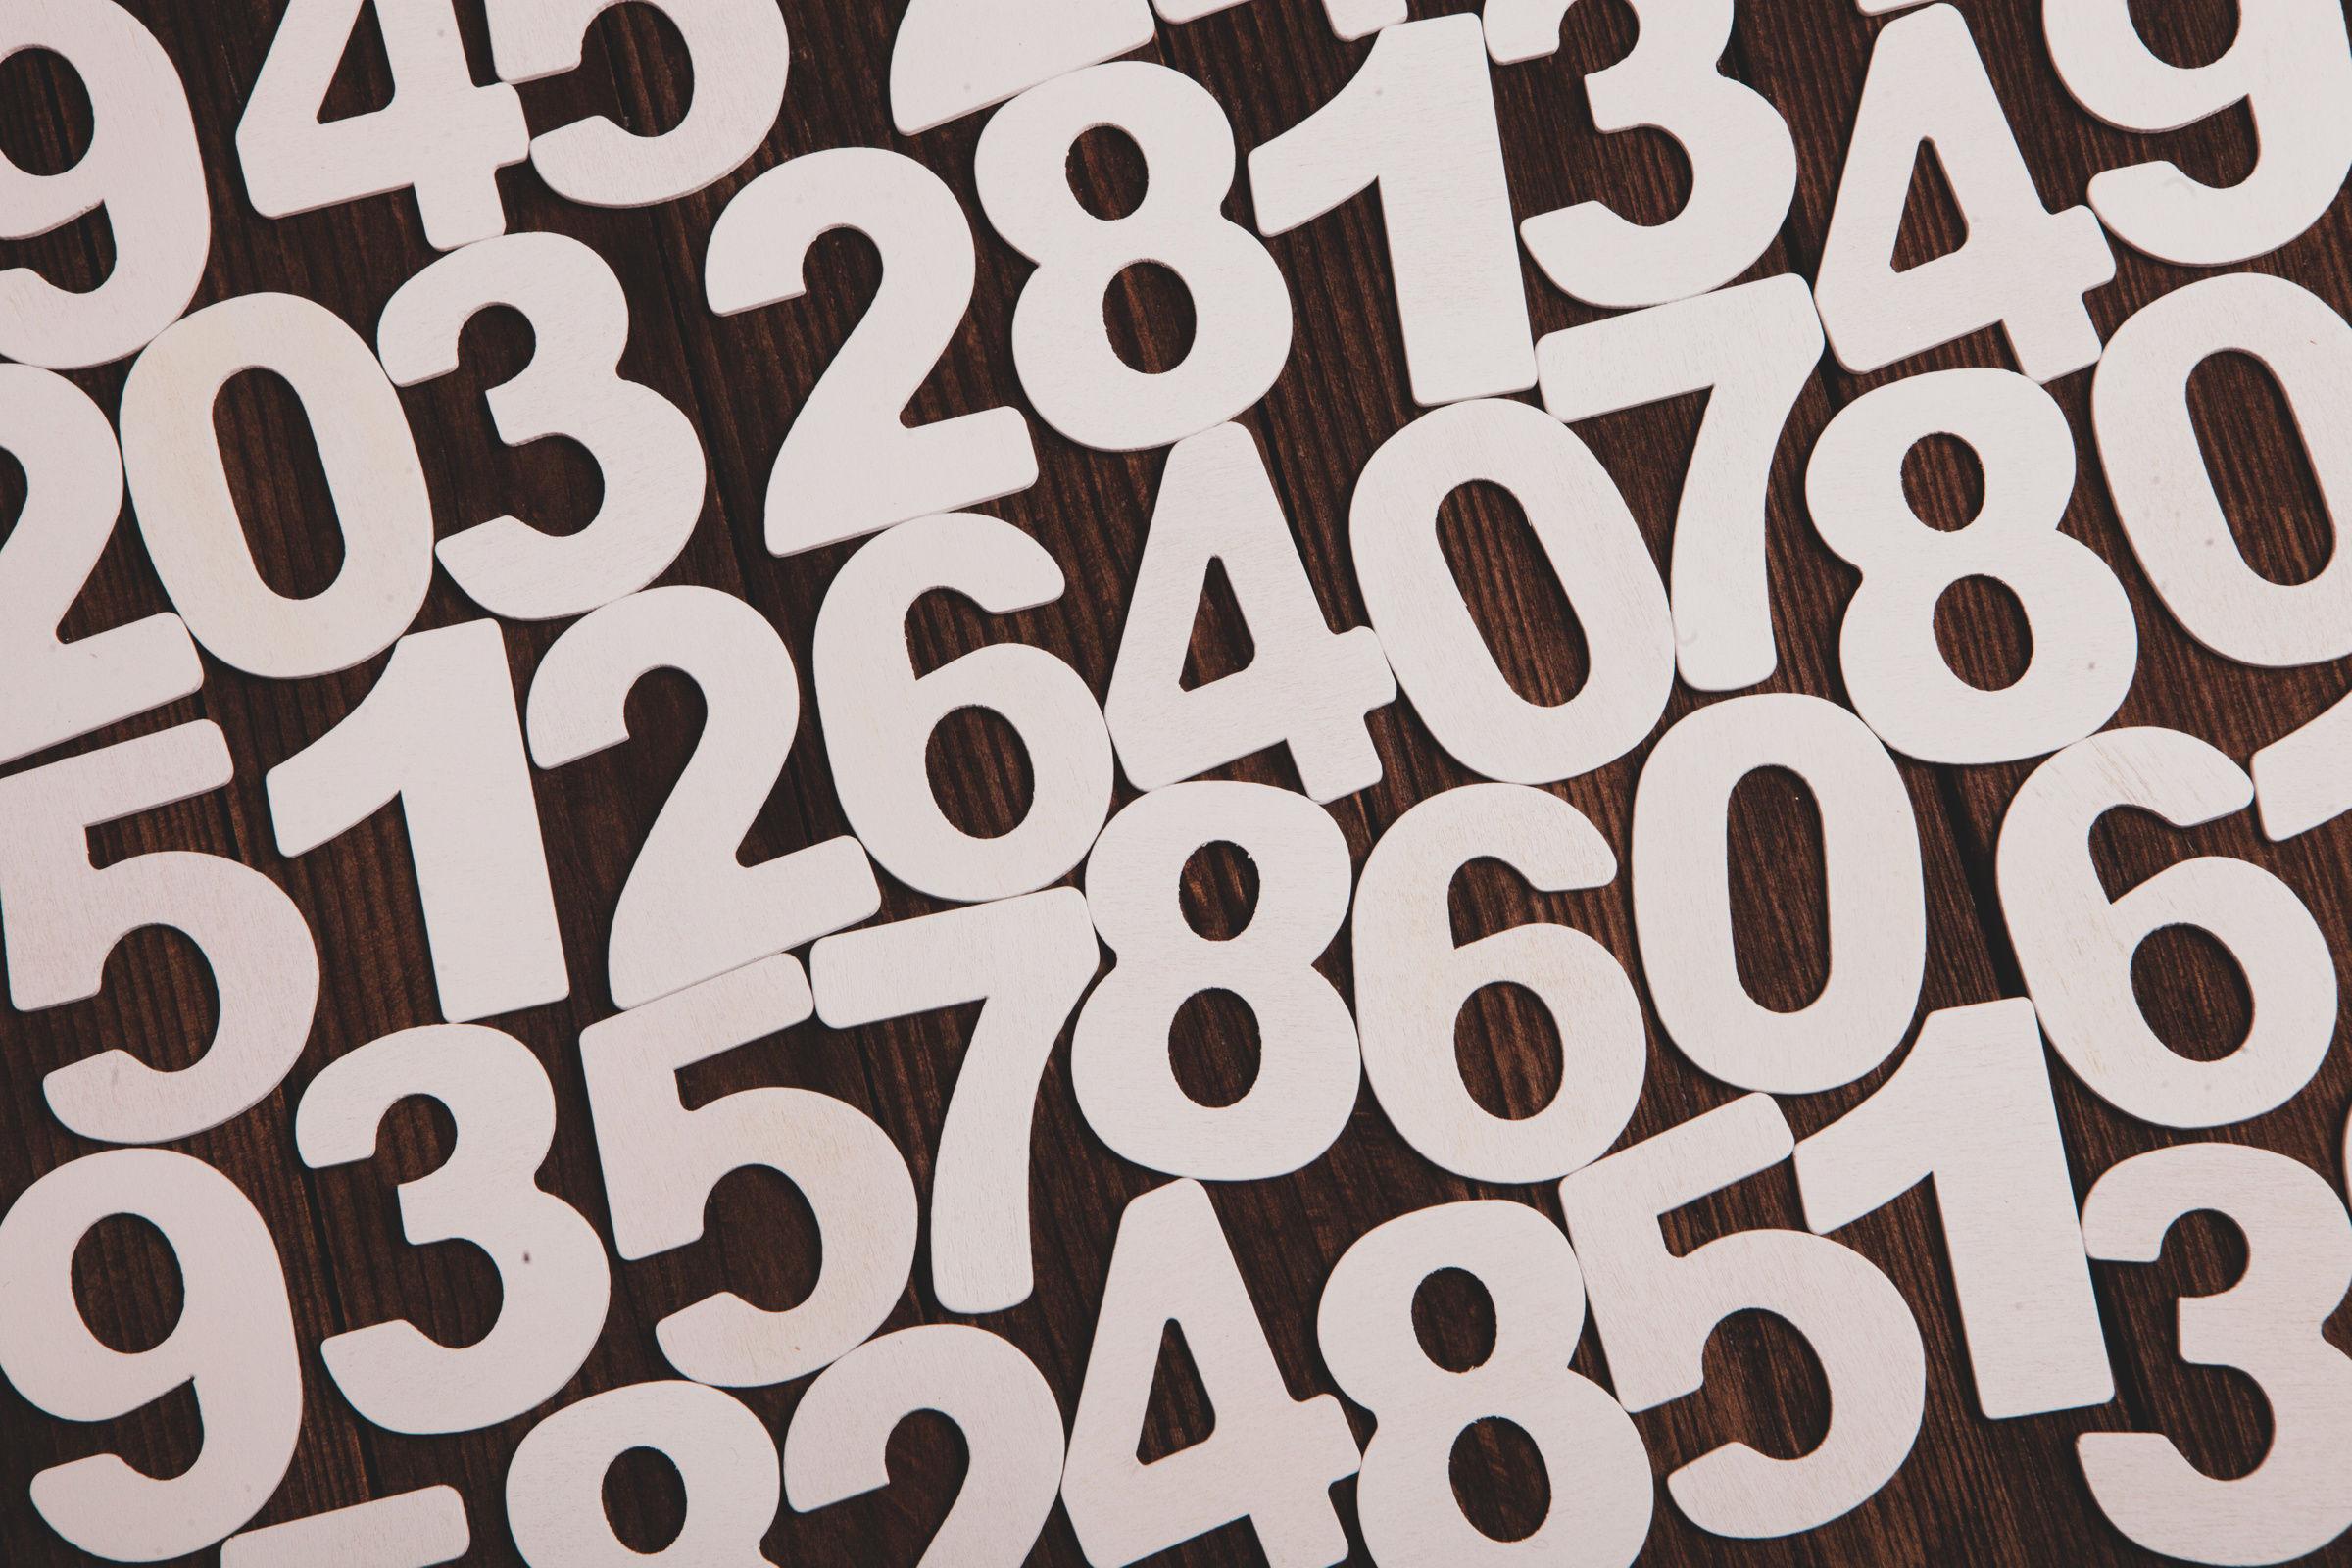 Число судьбы — это зашифрованная информация о вашем характере, сильных и слабых качествах. Фото © Pexels